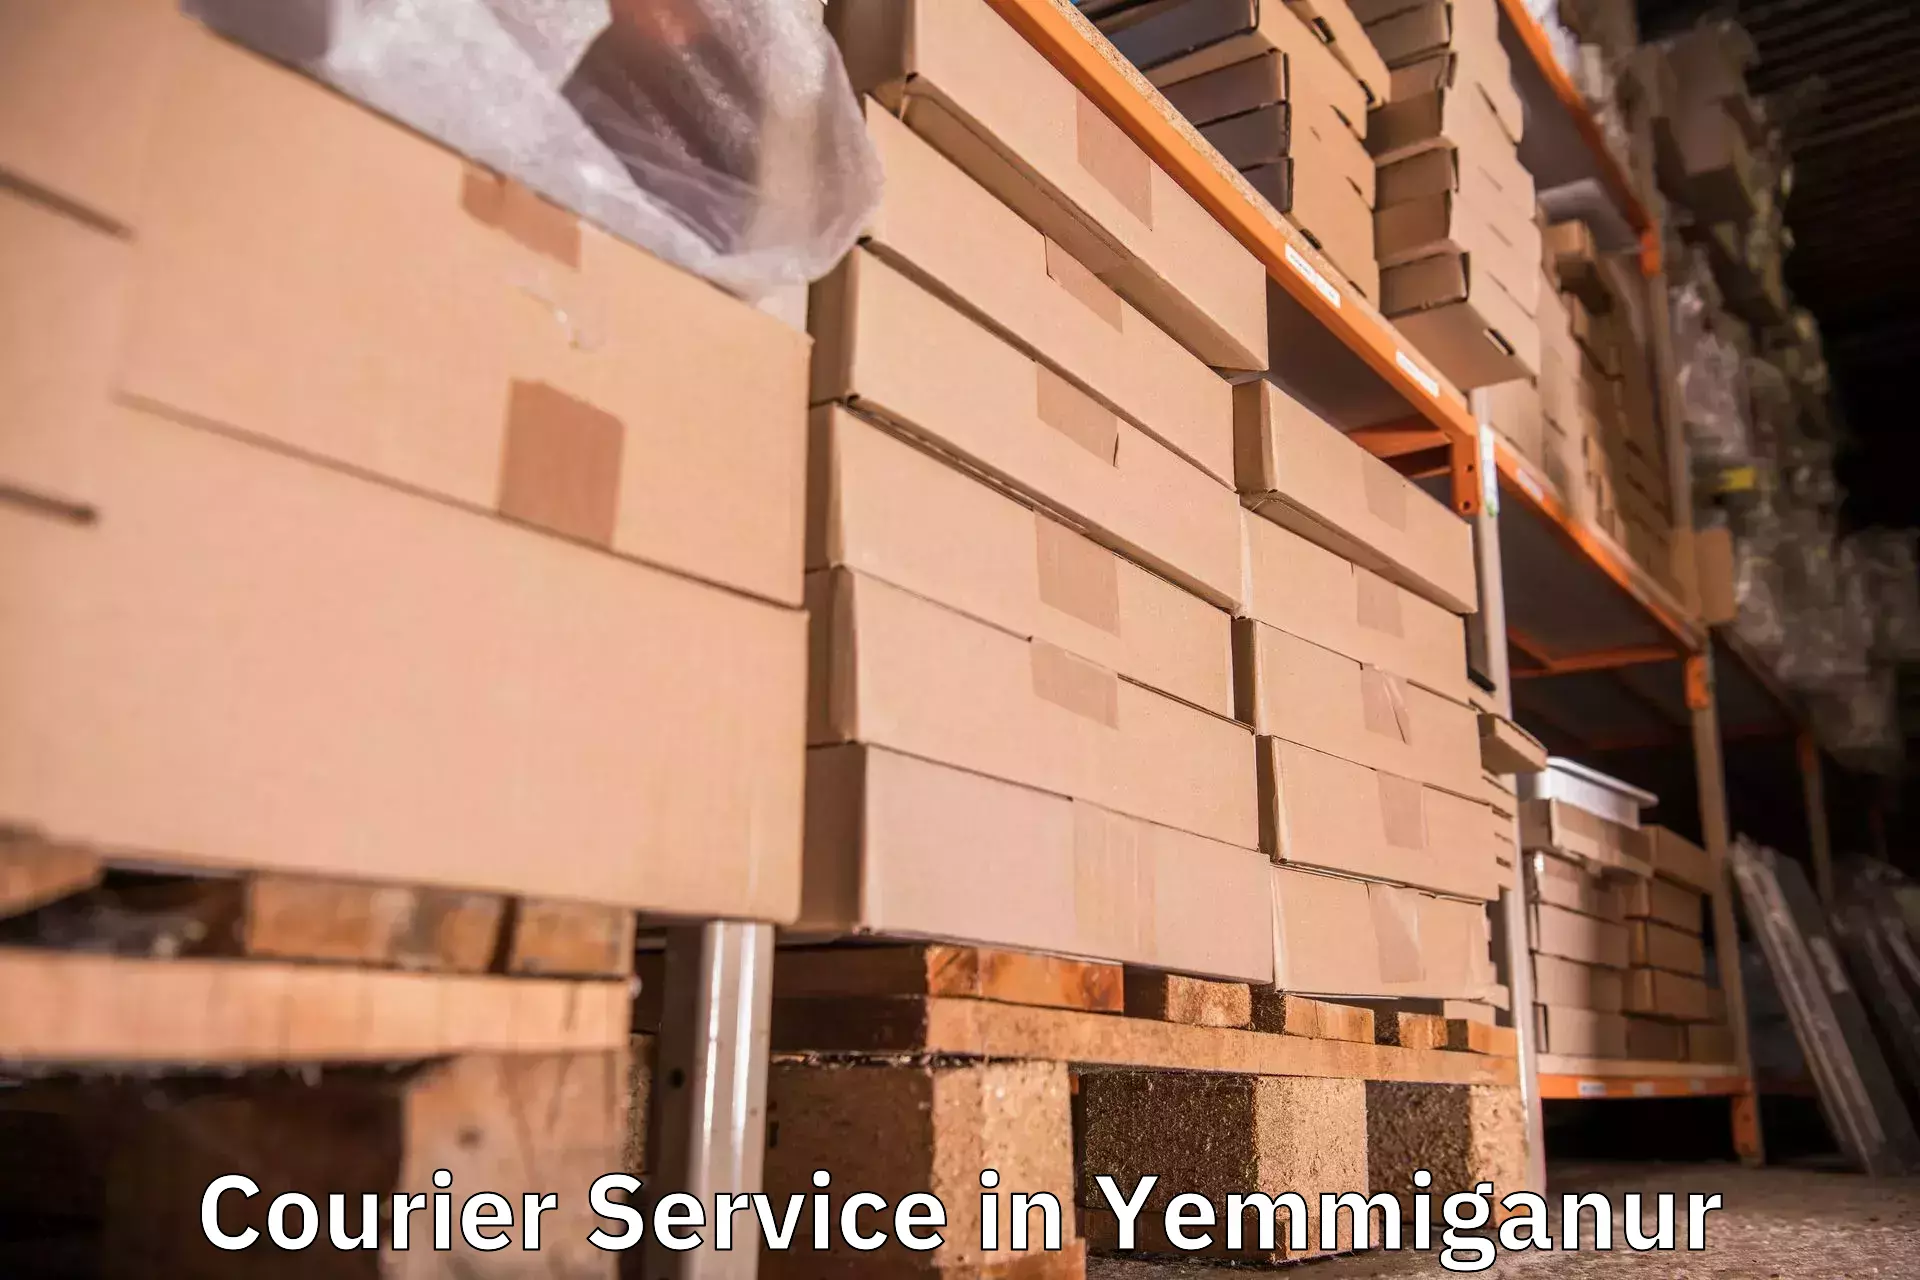 Tracking updates in Yemmiganur